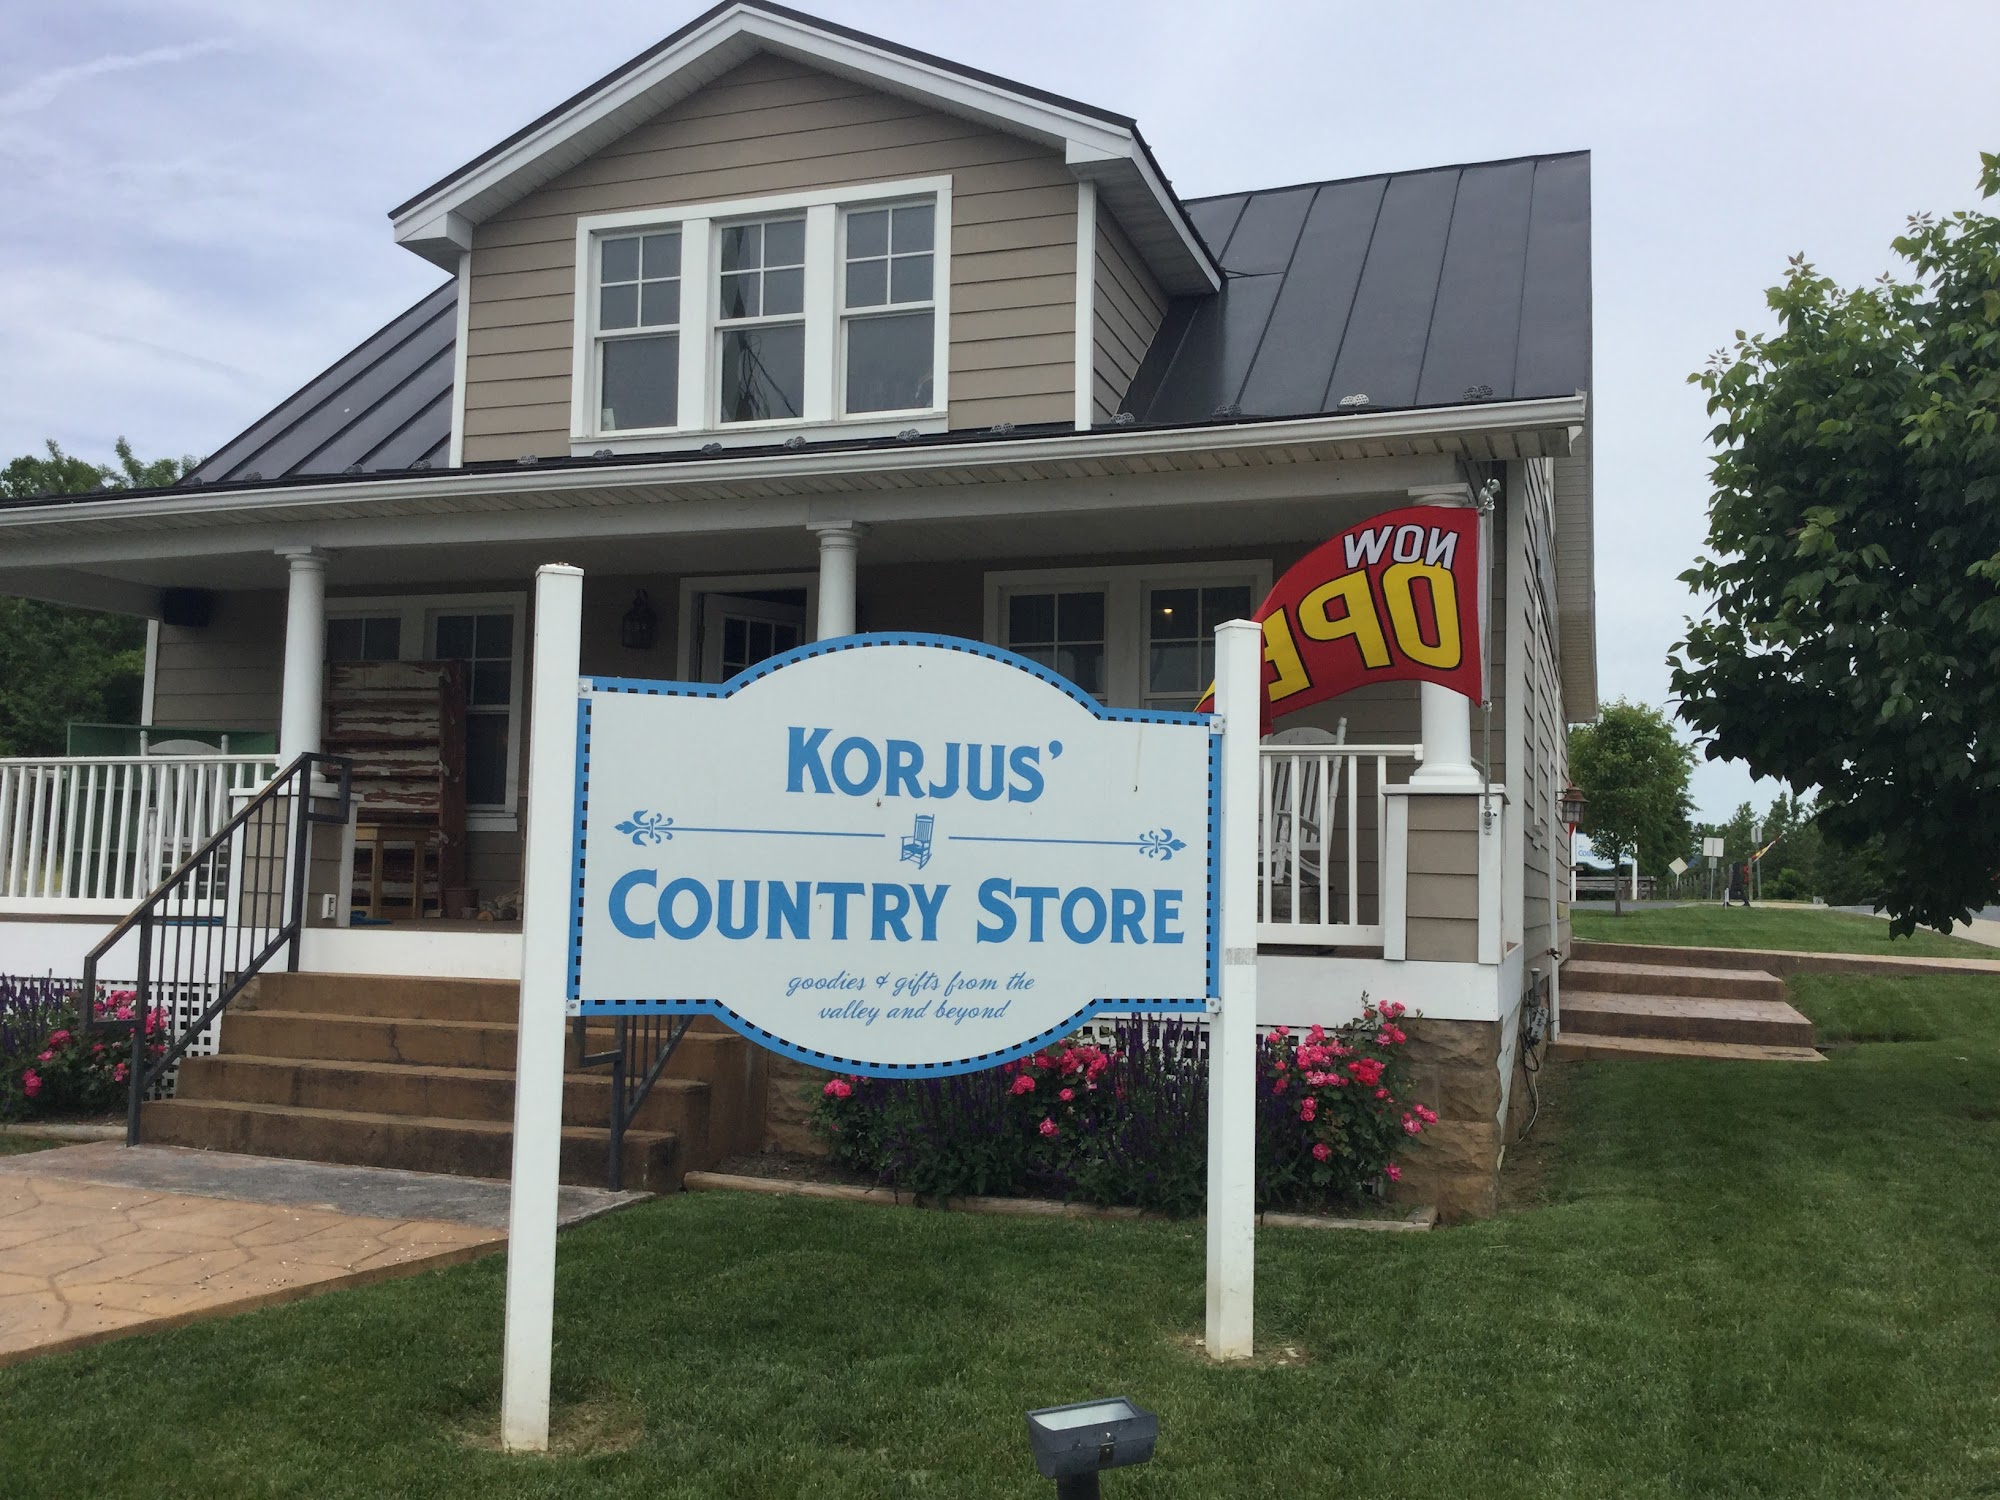 Korjus' Country Store